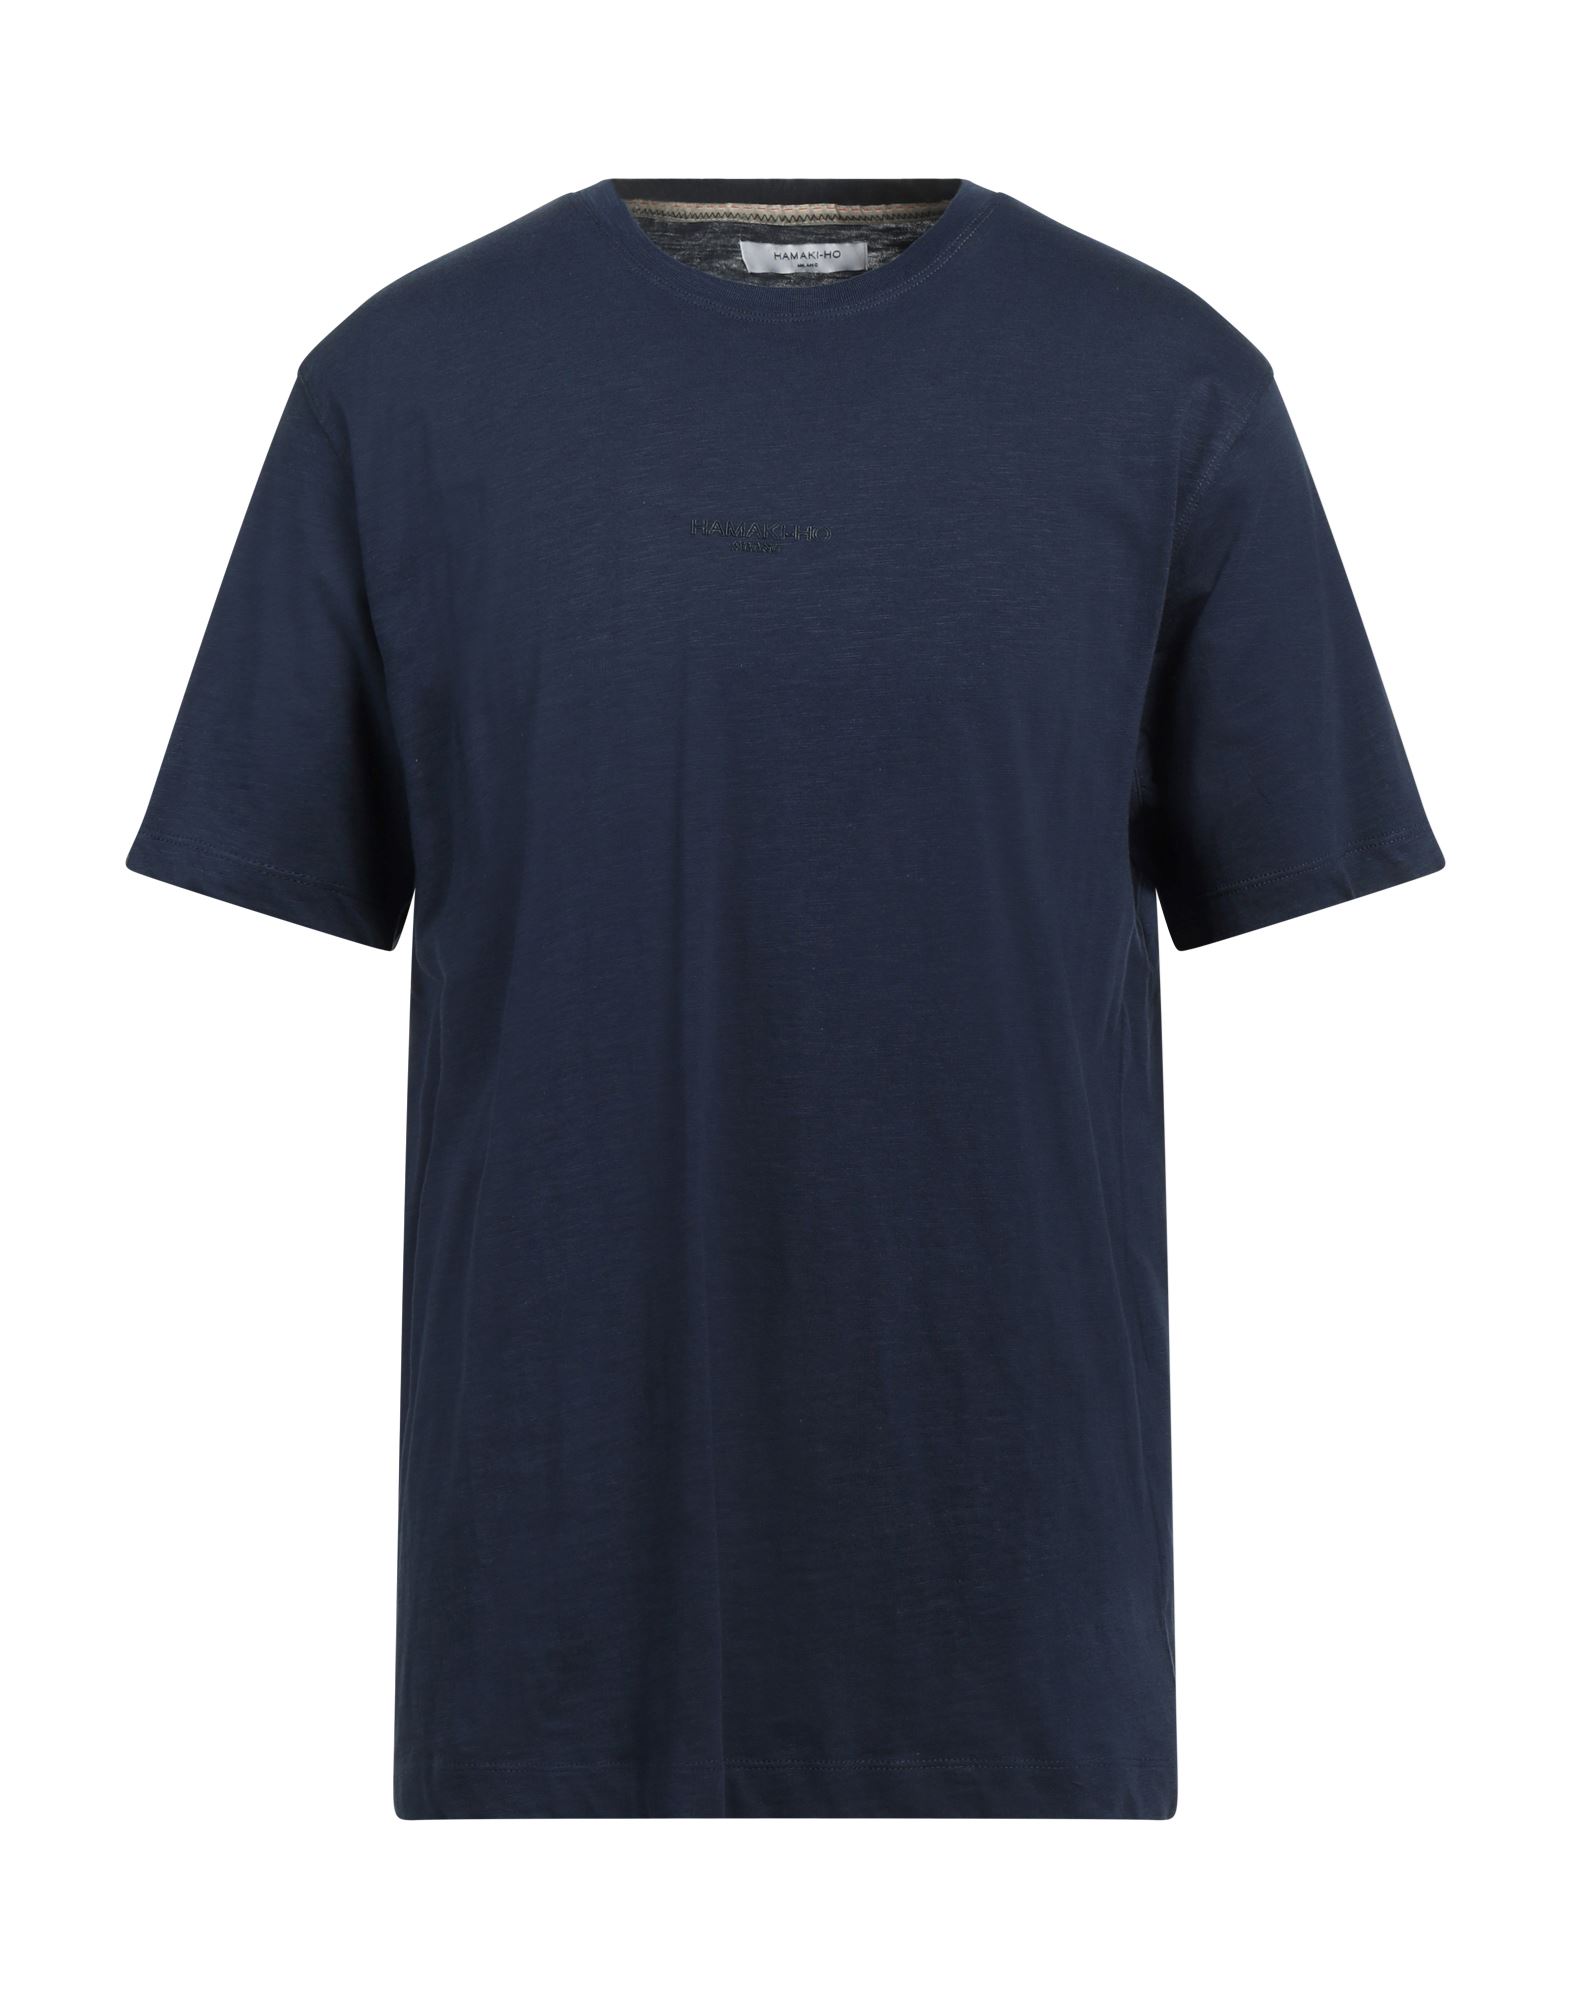 Hamaki-ho T-shirts In Blue